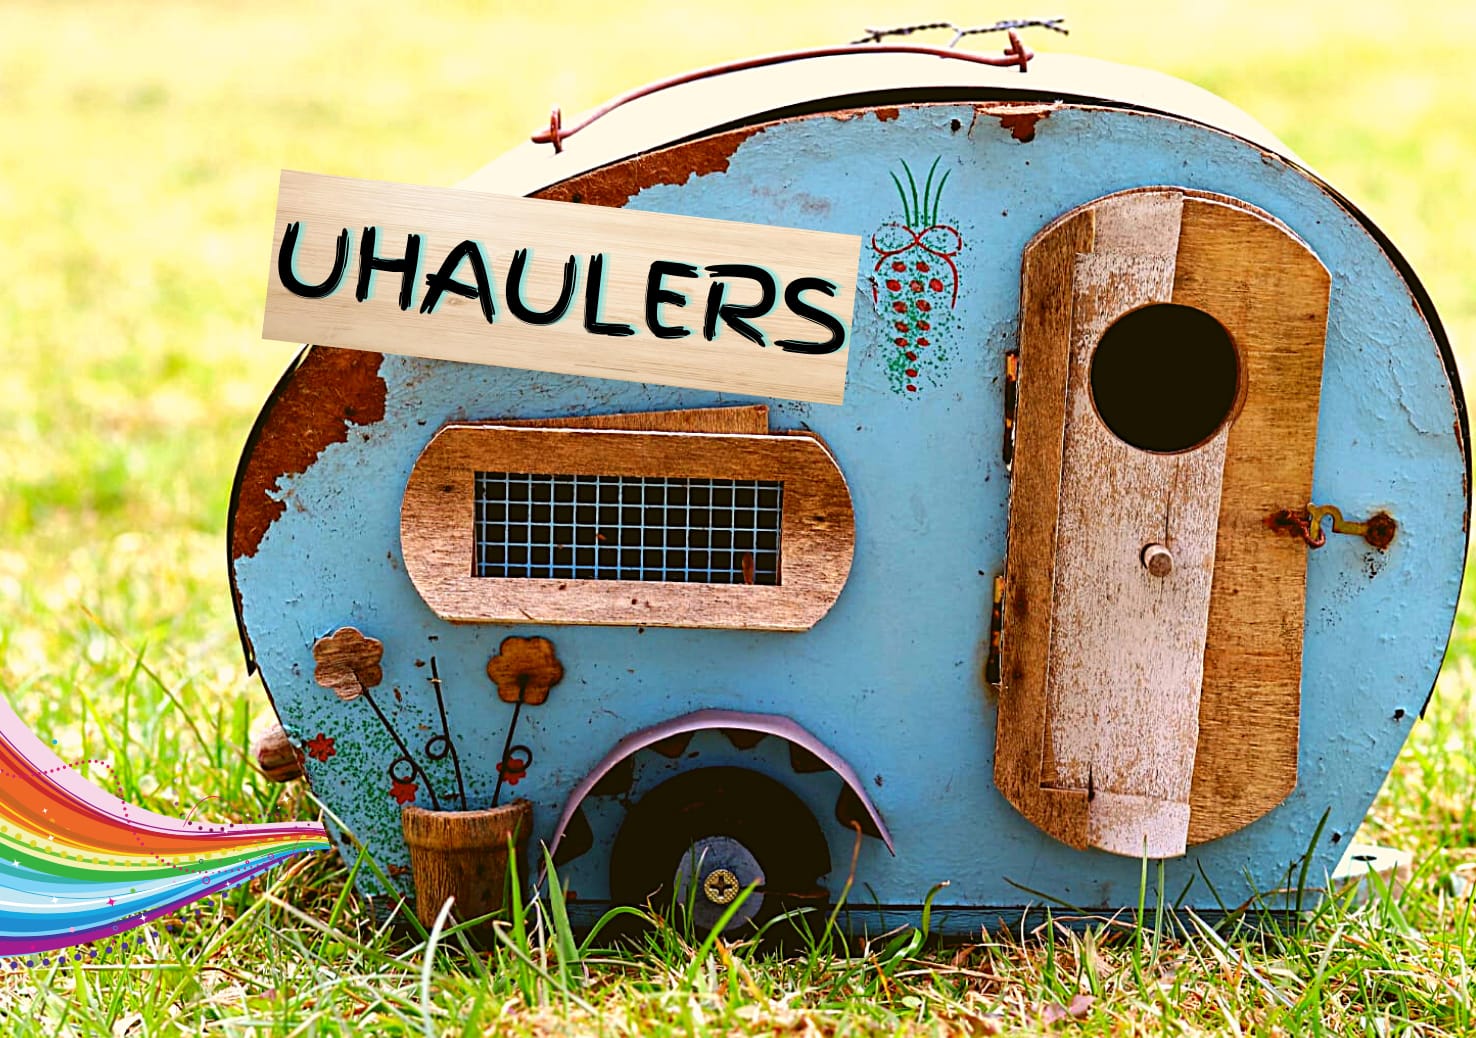 u-haulers | A Lesbian Podcast